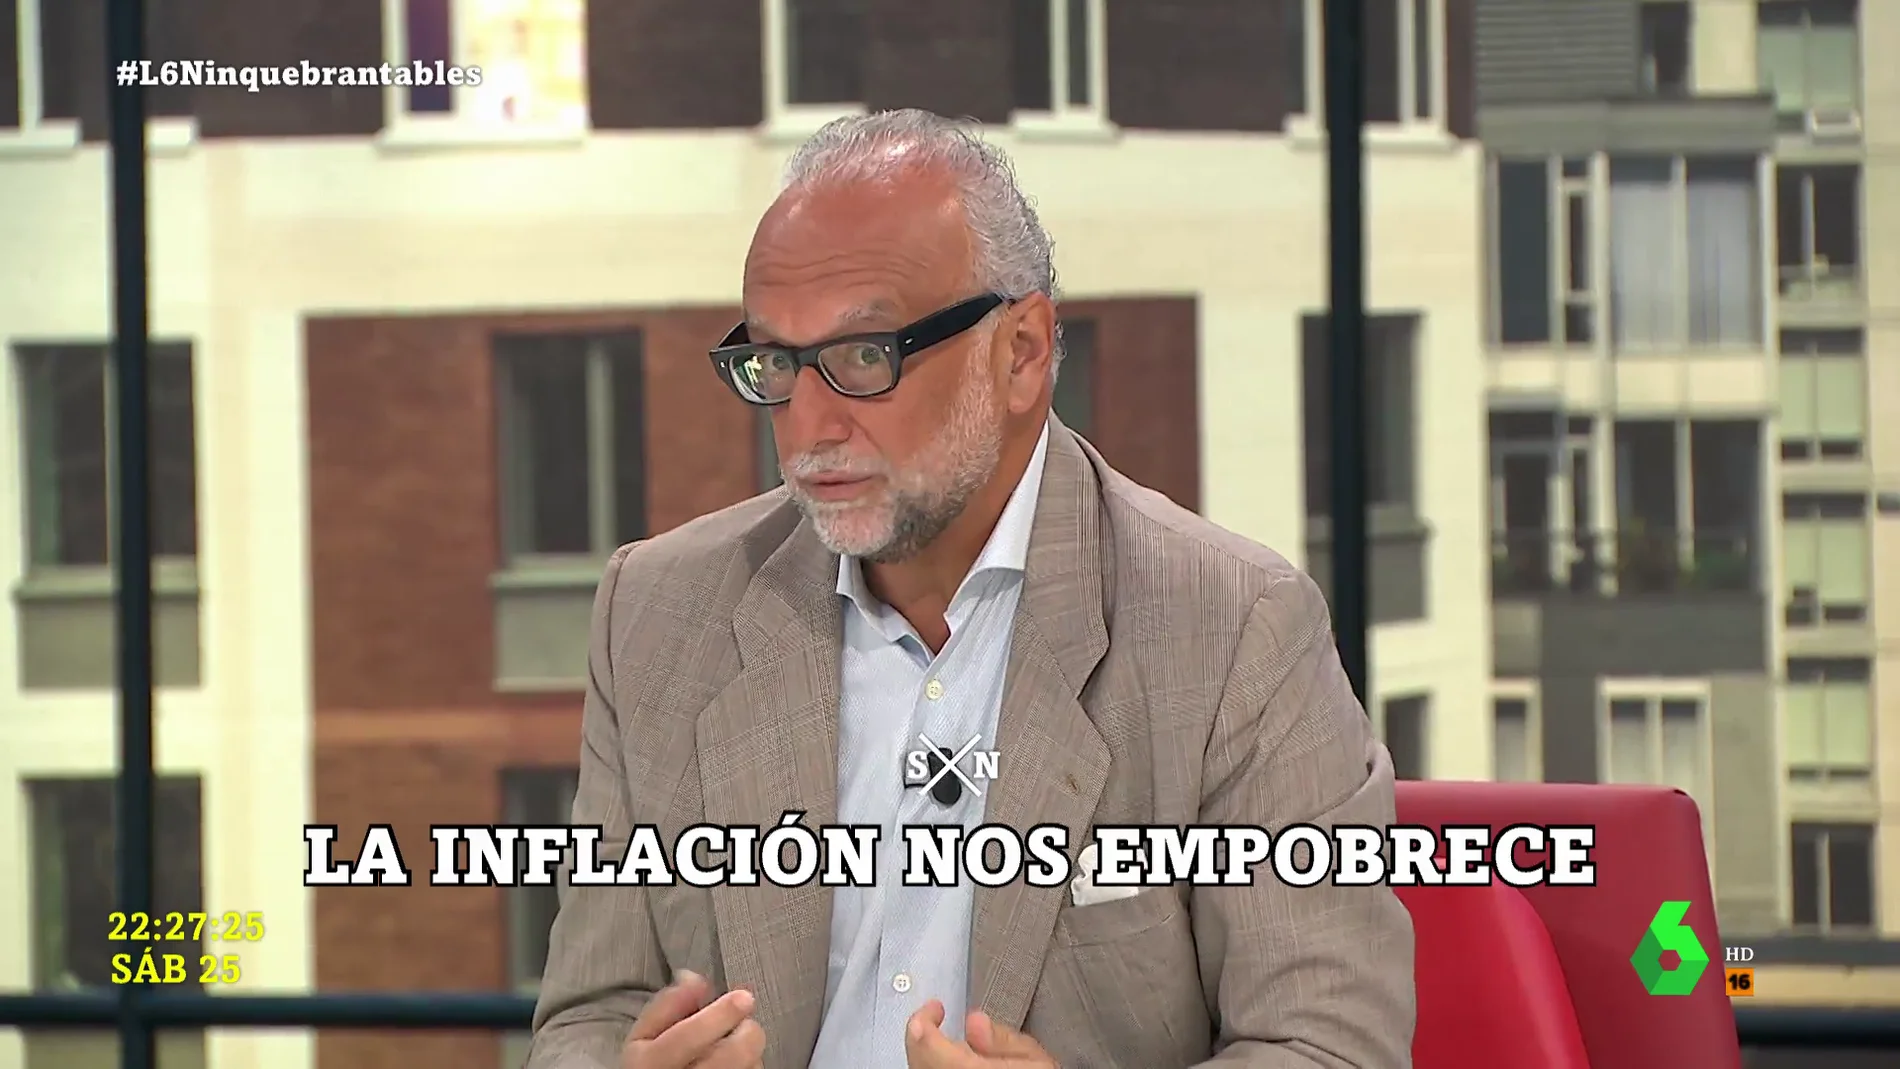 La advertencia del economista José María O'Kean: "Aplazamos el problema y nos rendimos a la inflación hasta que en diciembre veamos qué hacer con las pensiones y los salarios"